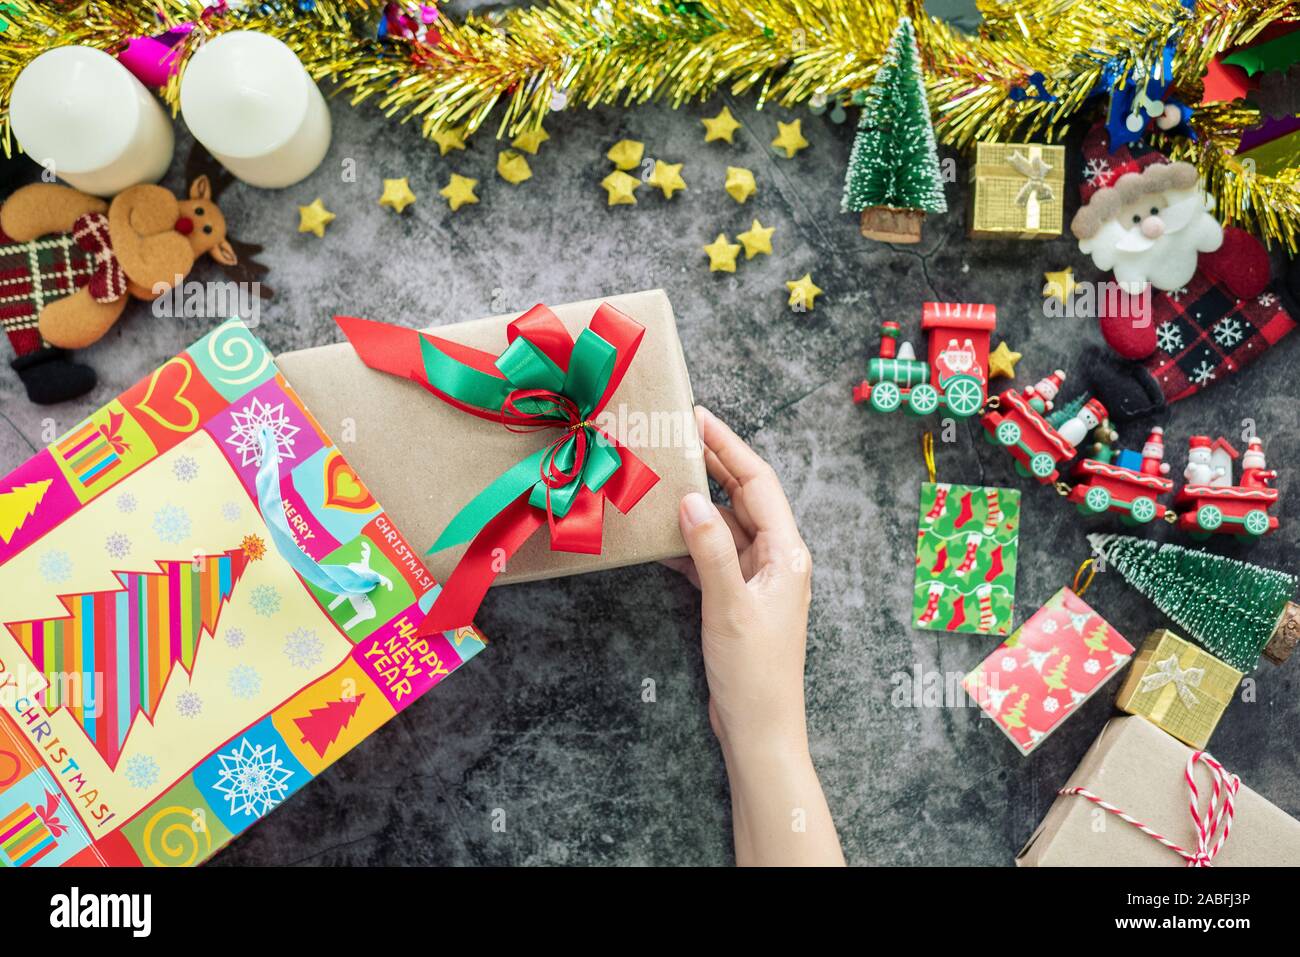 Hand holding Christmas gift box du panier pendant la période de Noël et de cadeaux, décorations festival avec ornement de Noël sur la table Banque D'Images